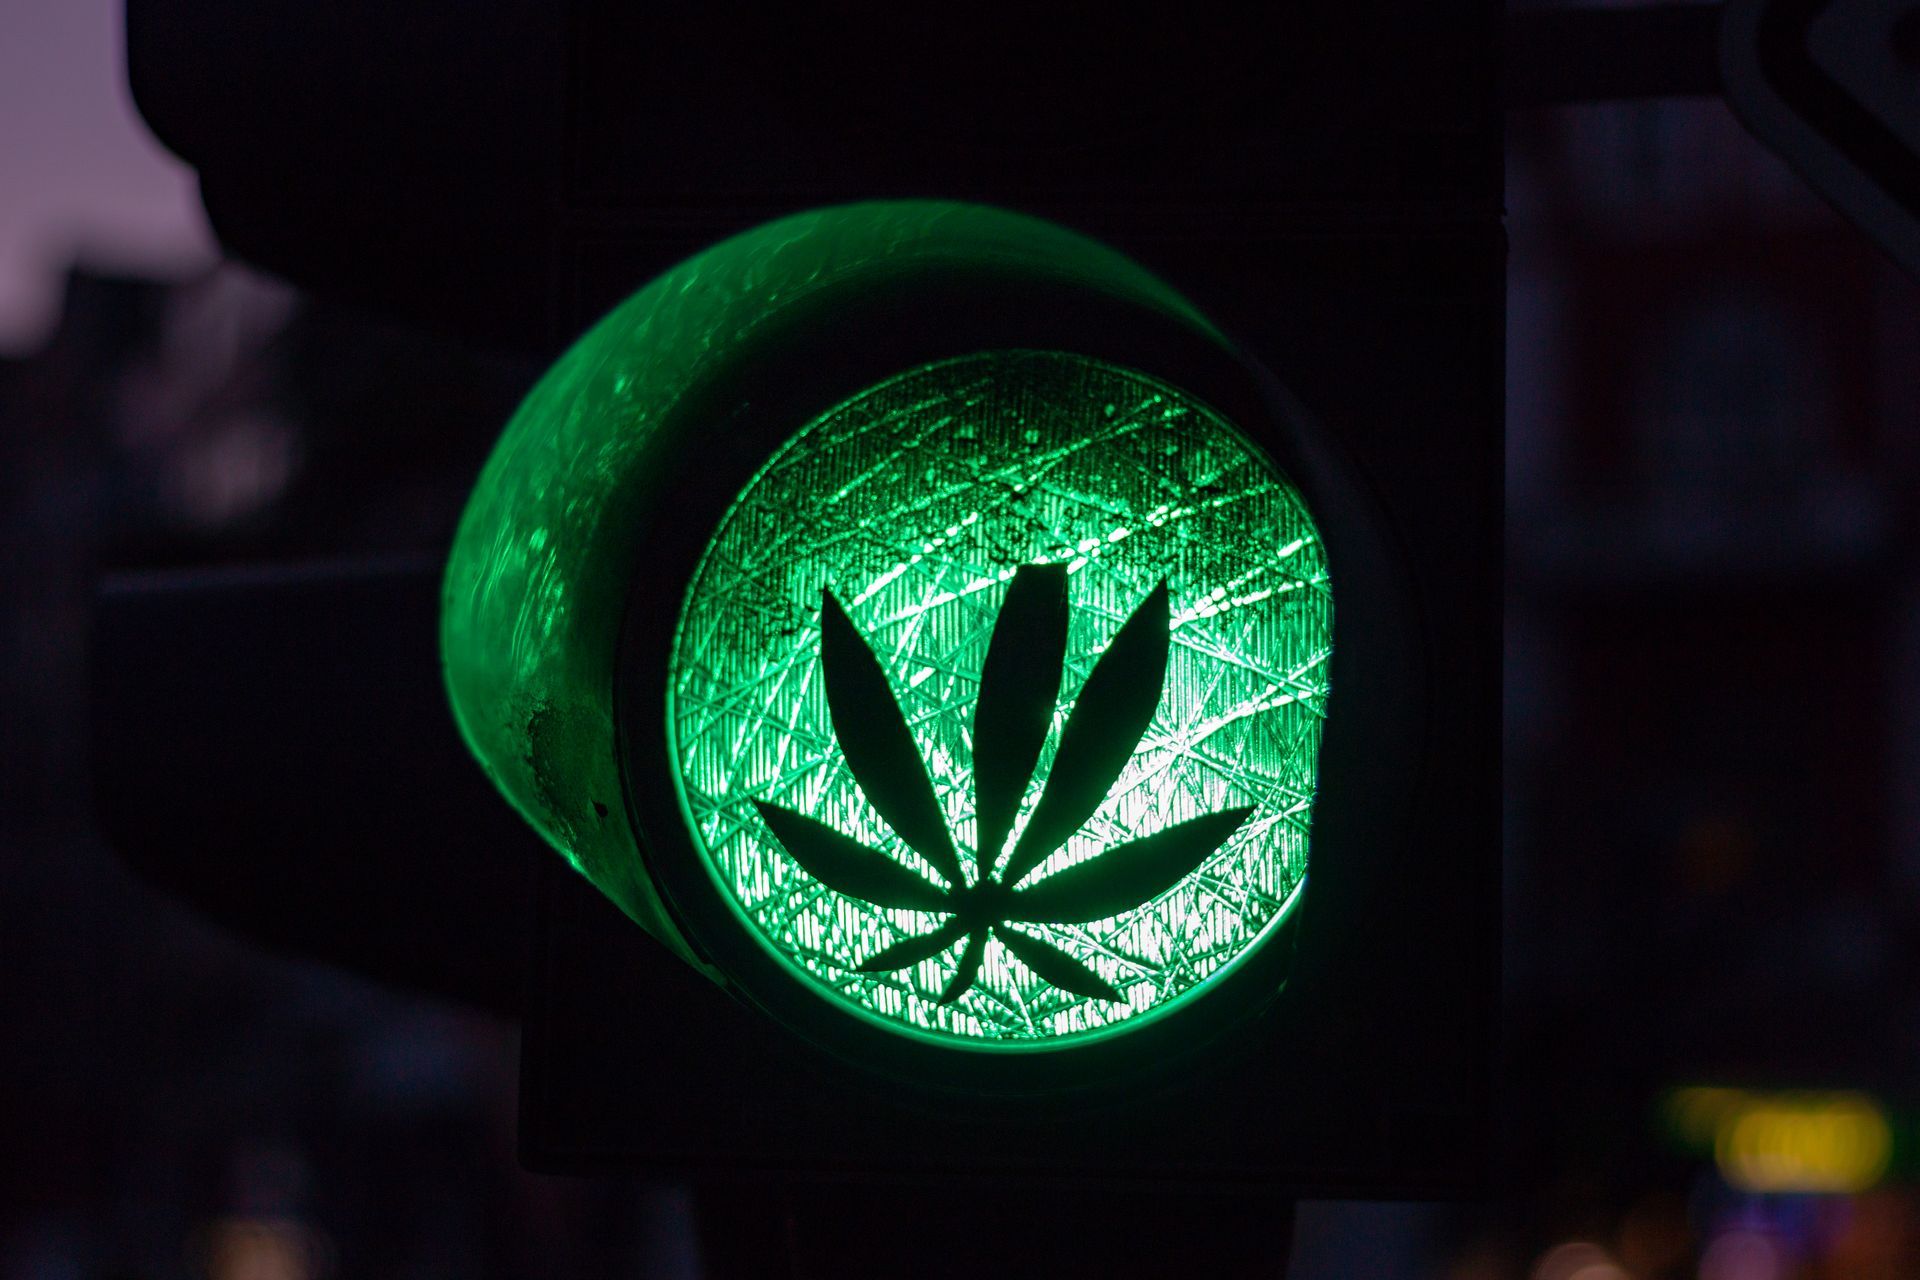 Grüne Ampel mit Cannabisblattzeichen